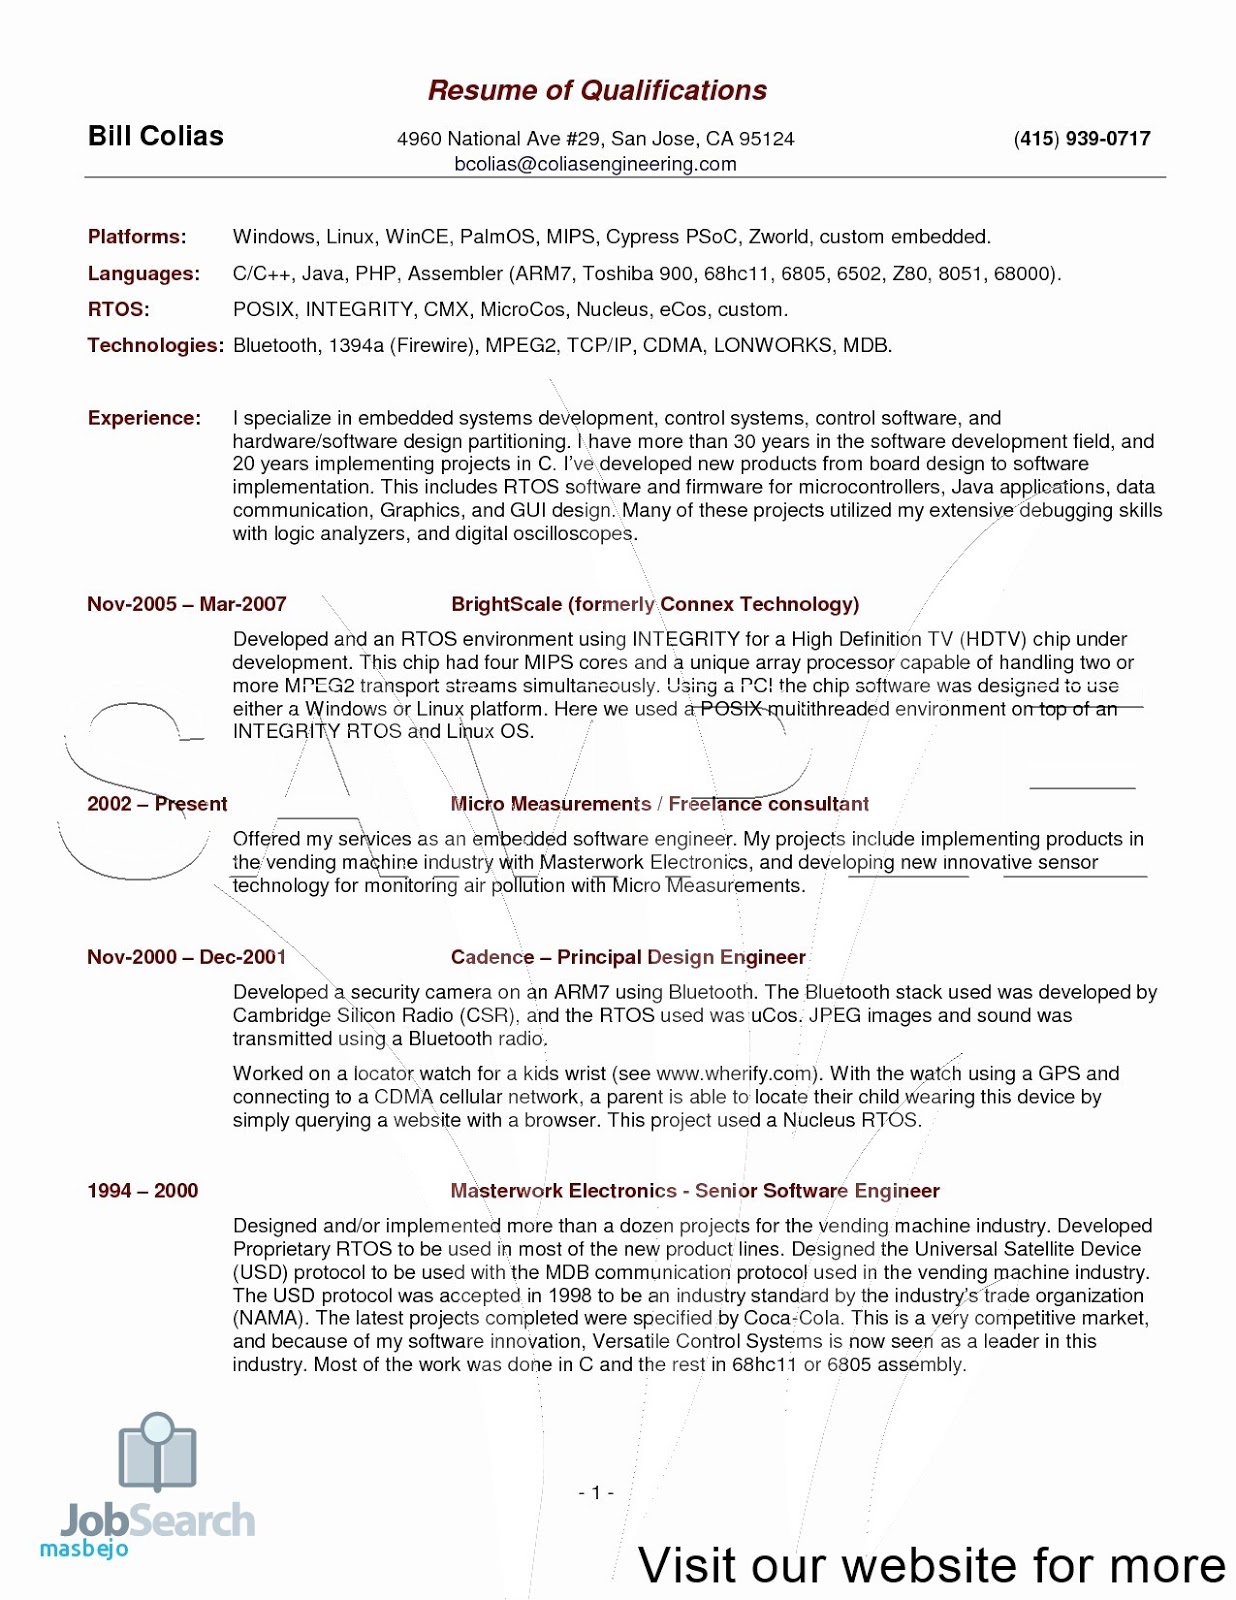 interior design resume sample interior design resume samples interior design resume samples pdf